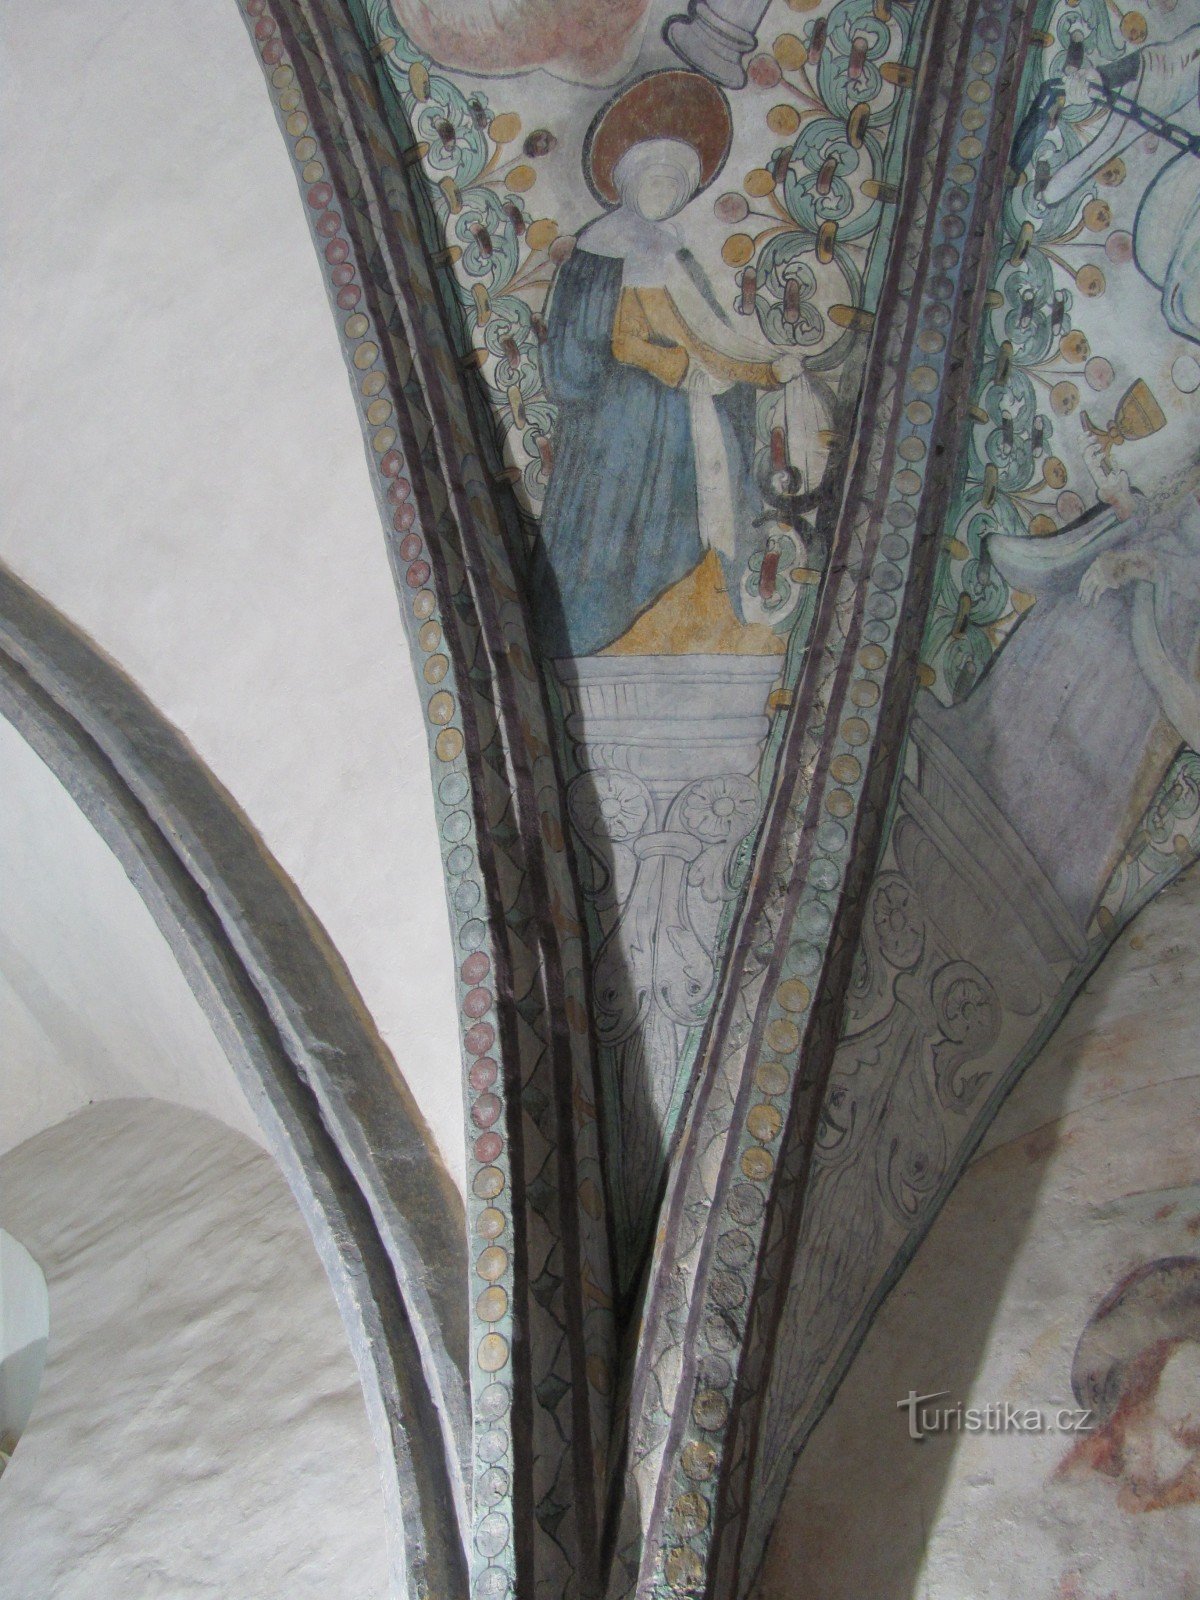 Gewölbe und Fresken im Presbyterium der Kapelle